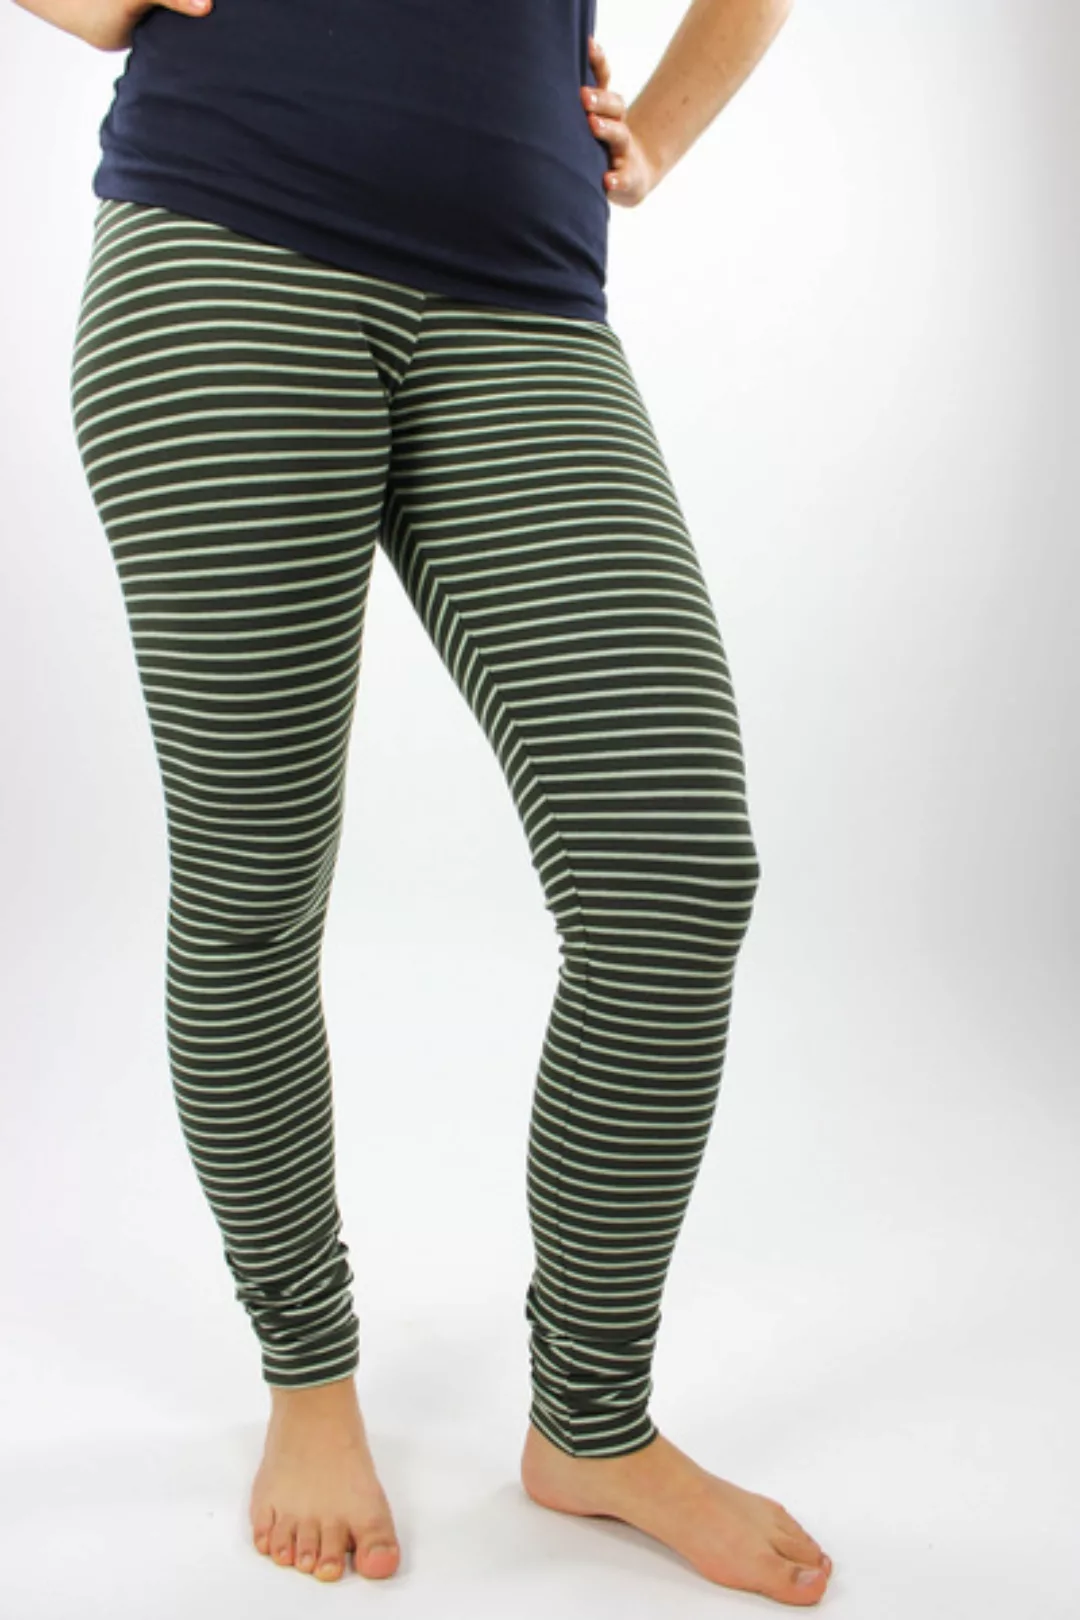 Damen-leggings Grün Gestreift günstig online kaufen